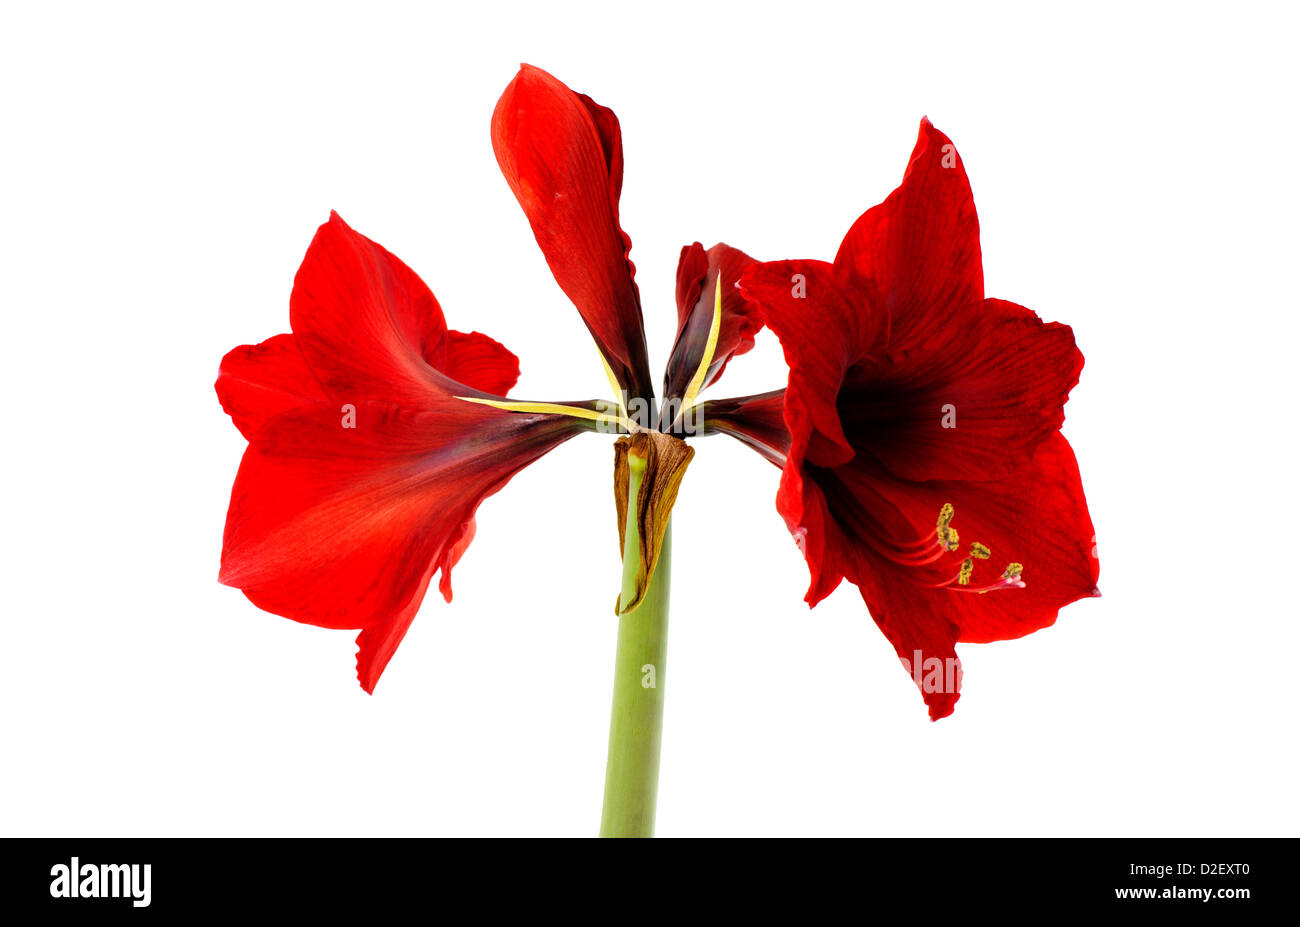 red amaryllis flower isolated on white Stock Photo